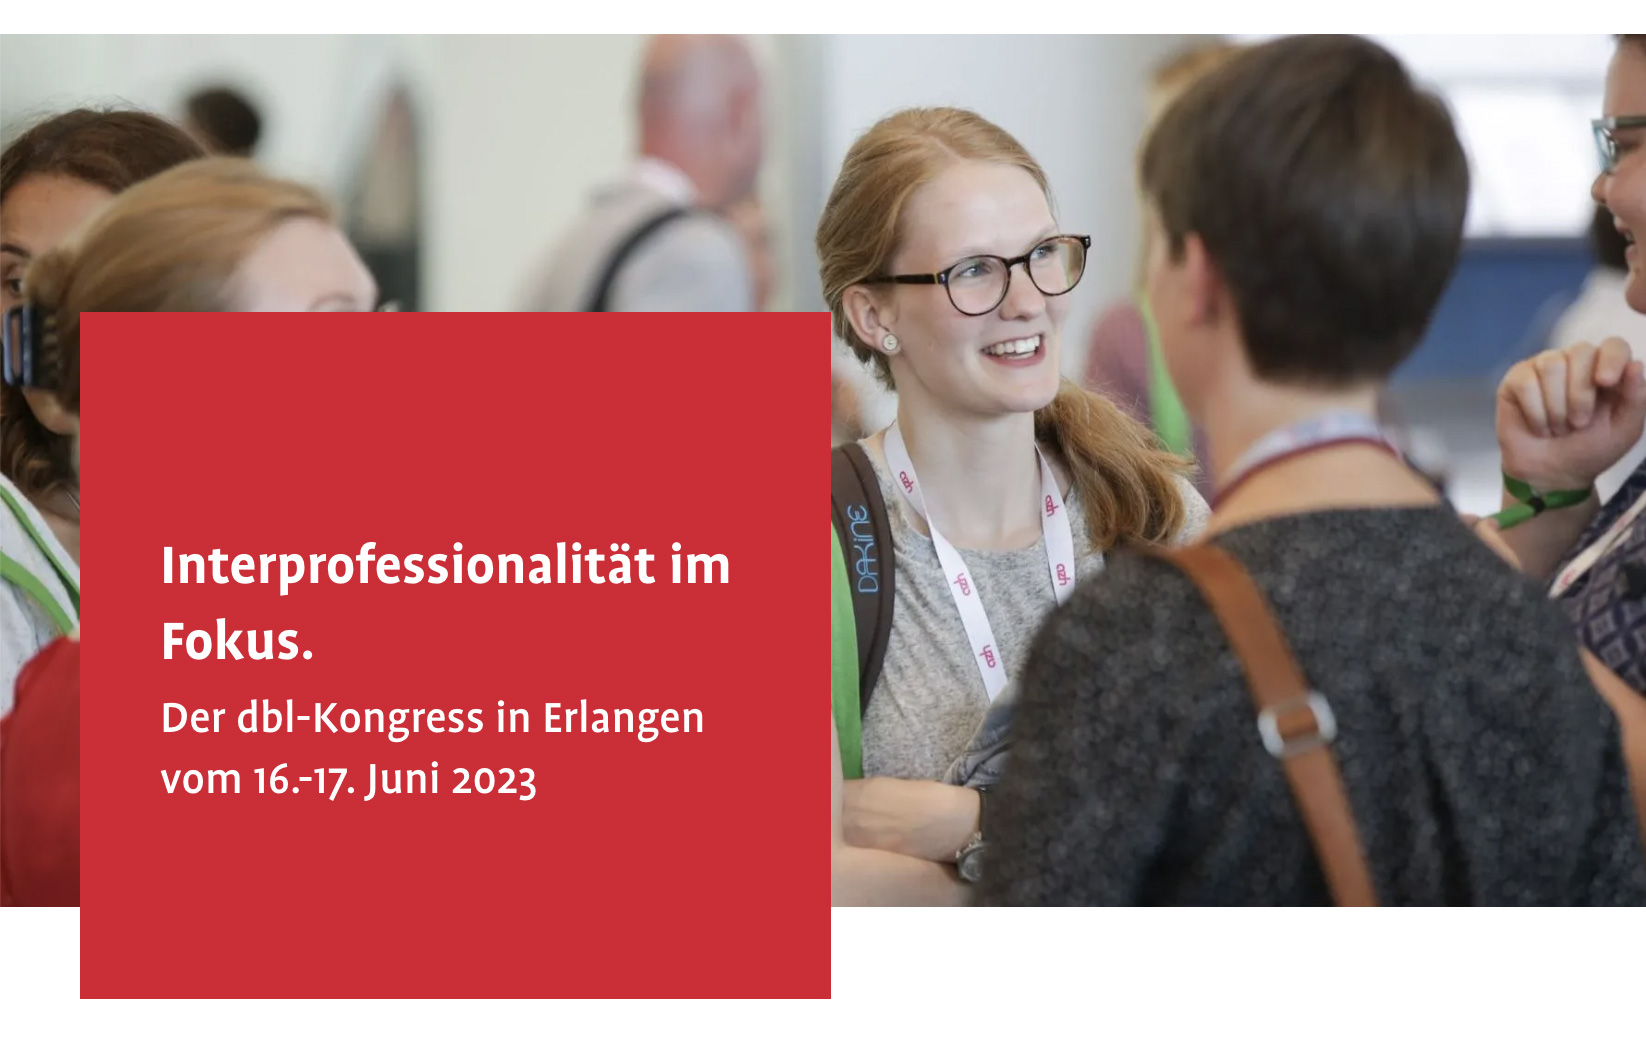 Interprofessionalität im Fokus. Der dbl-Kongress in Erlangen 16.-17. Juni 2023